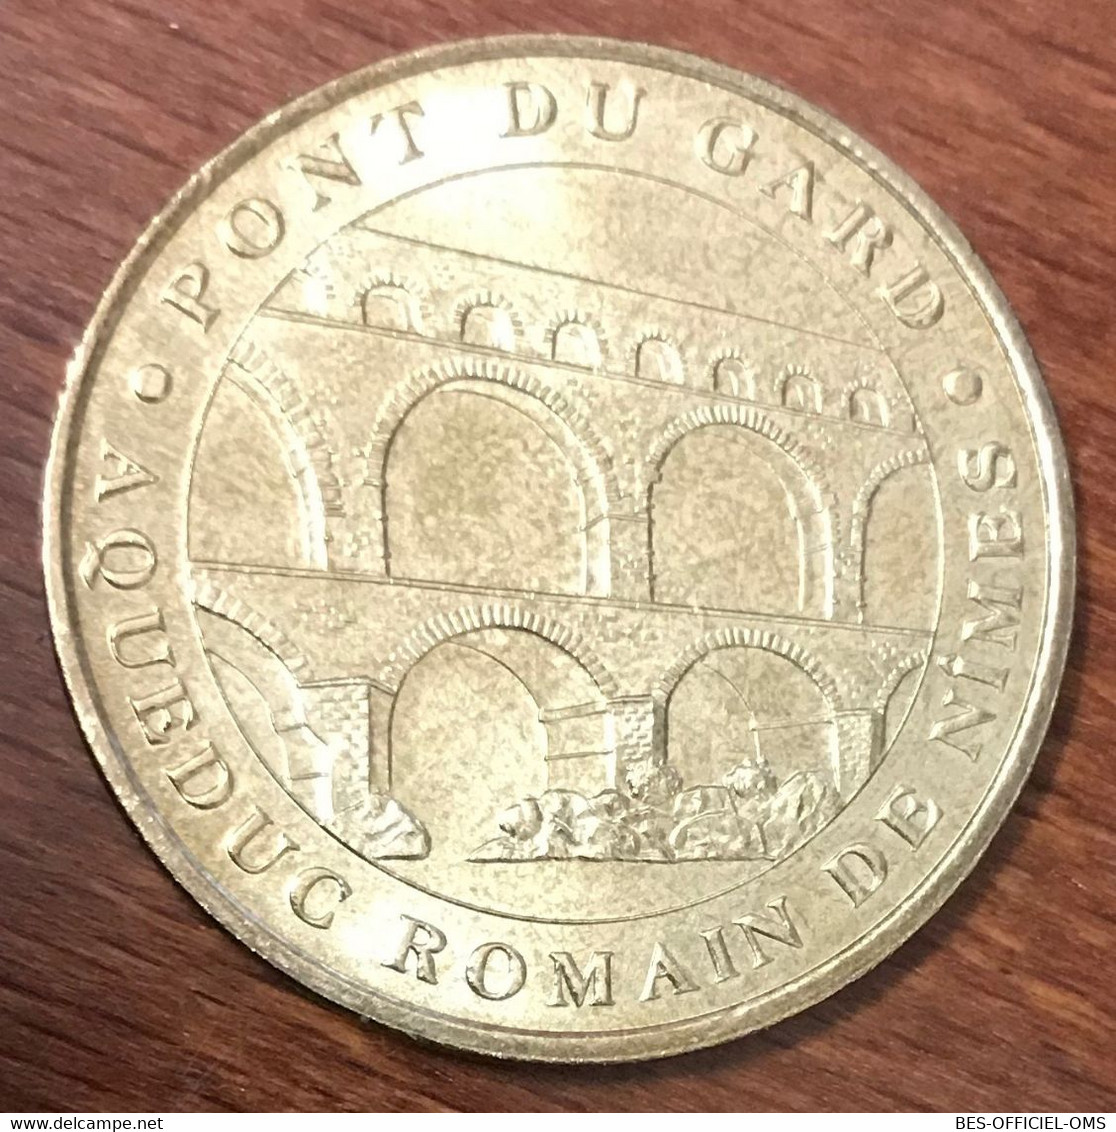 30 VERS PONT DU GARD MDP 2005 HAUT MEDAILLE SOUVENIR MONNAIE DE PARIS JETON TOURISTIQUE MEDALS COINS TOKENS - 2005